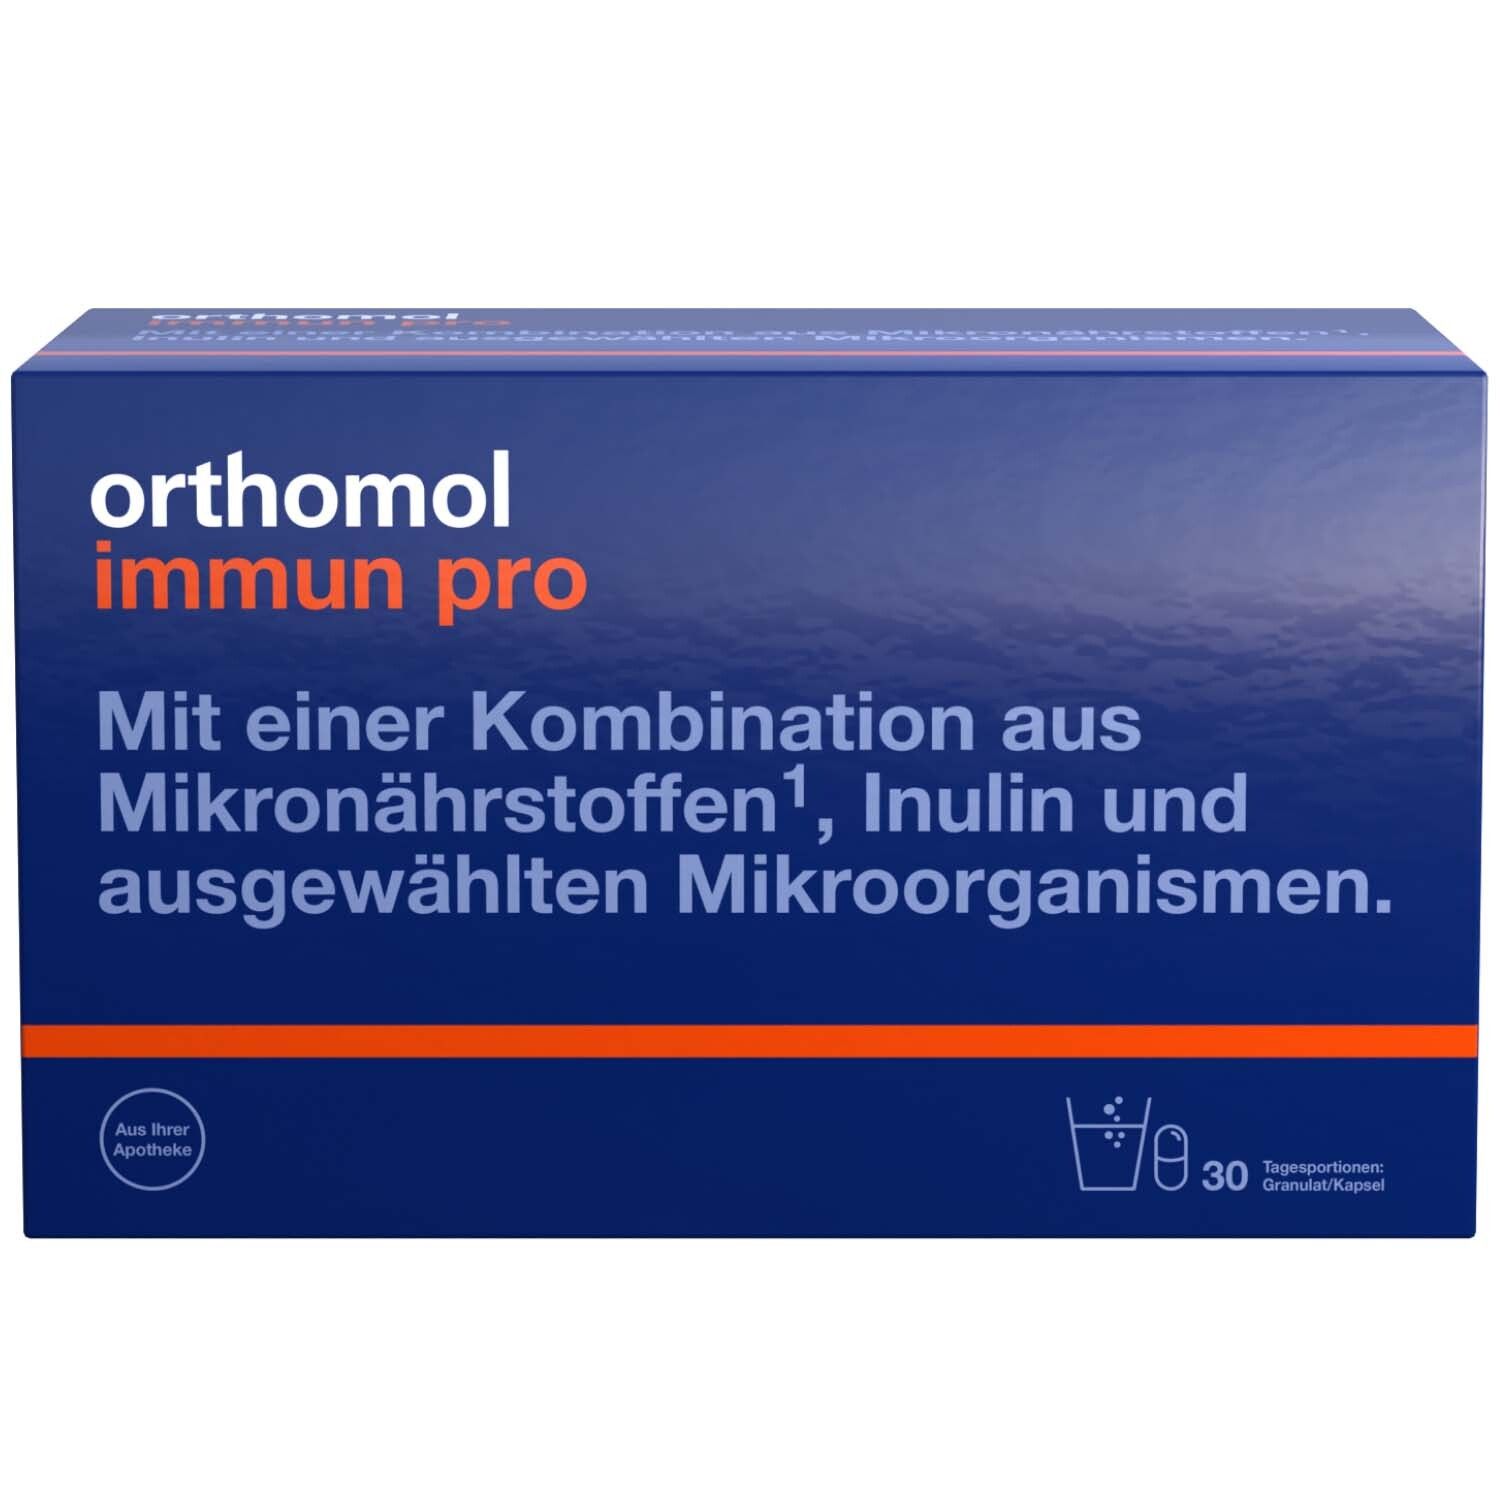 Orthomol Immun pro - für eine intakte Darmflora - Inulin, Mikronährstoffe und ausgewählte Mikroorganismen - Granulat/Kap